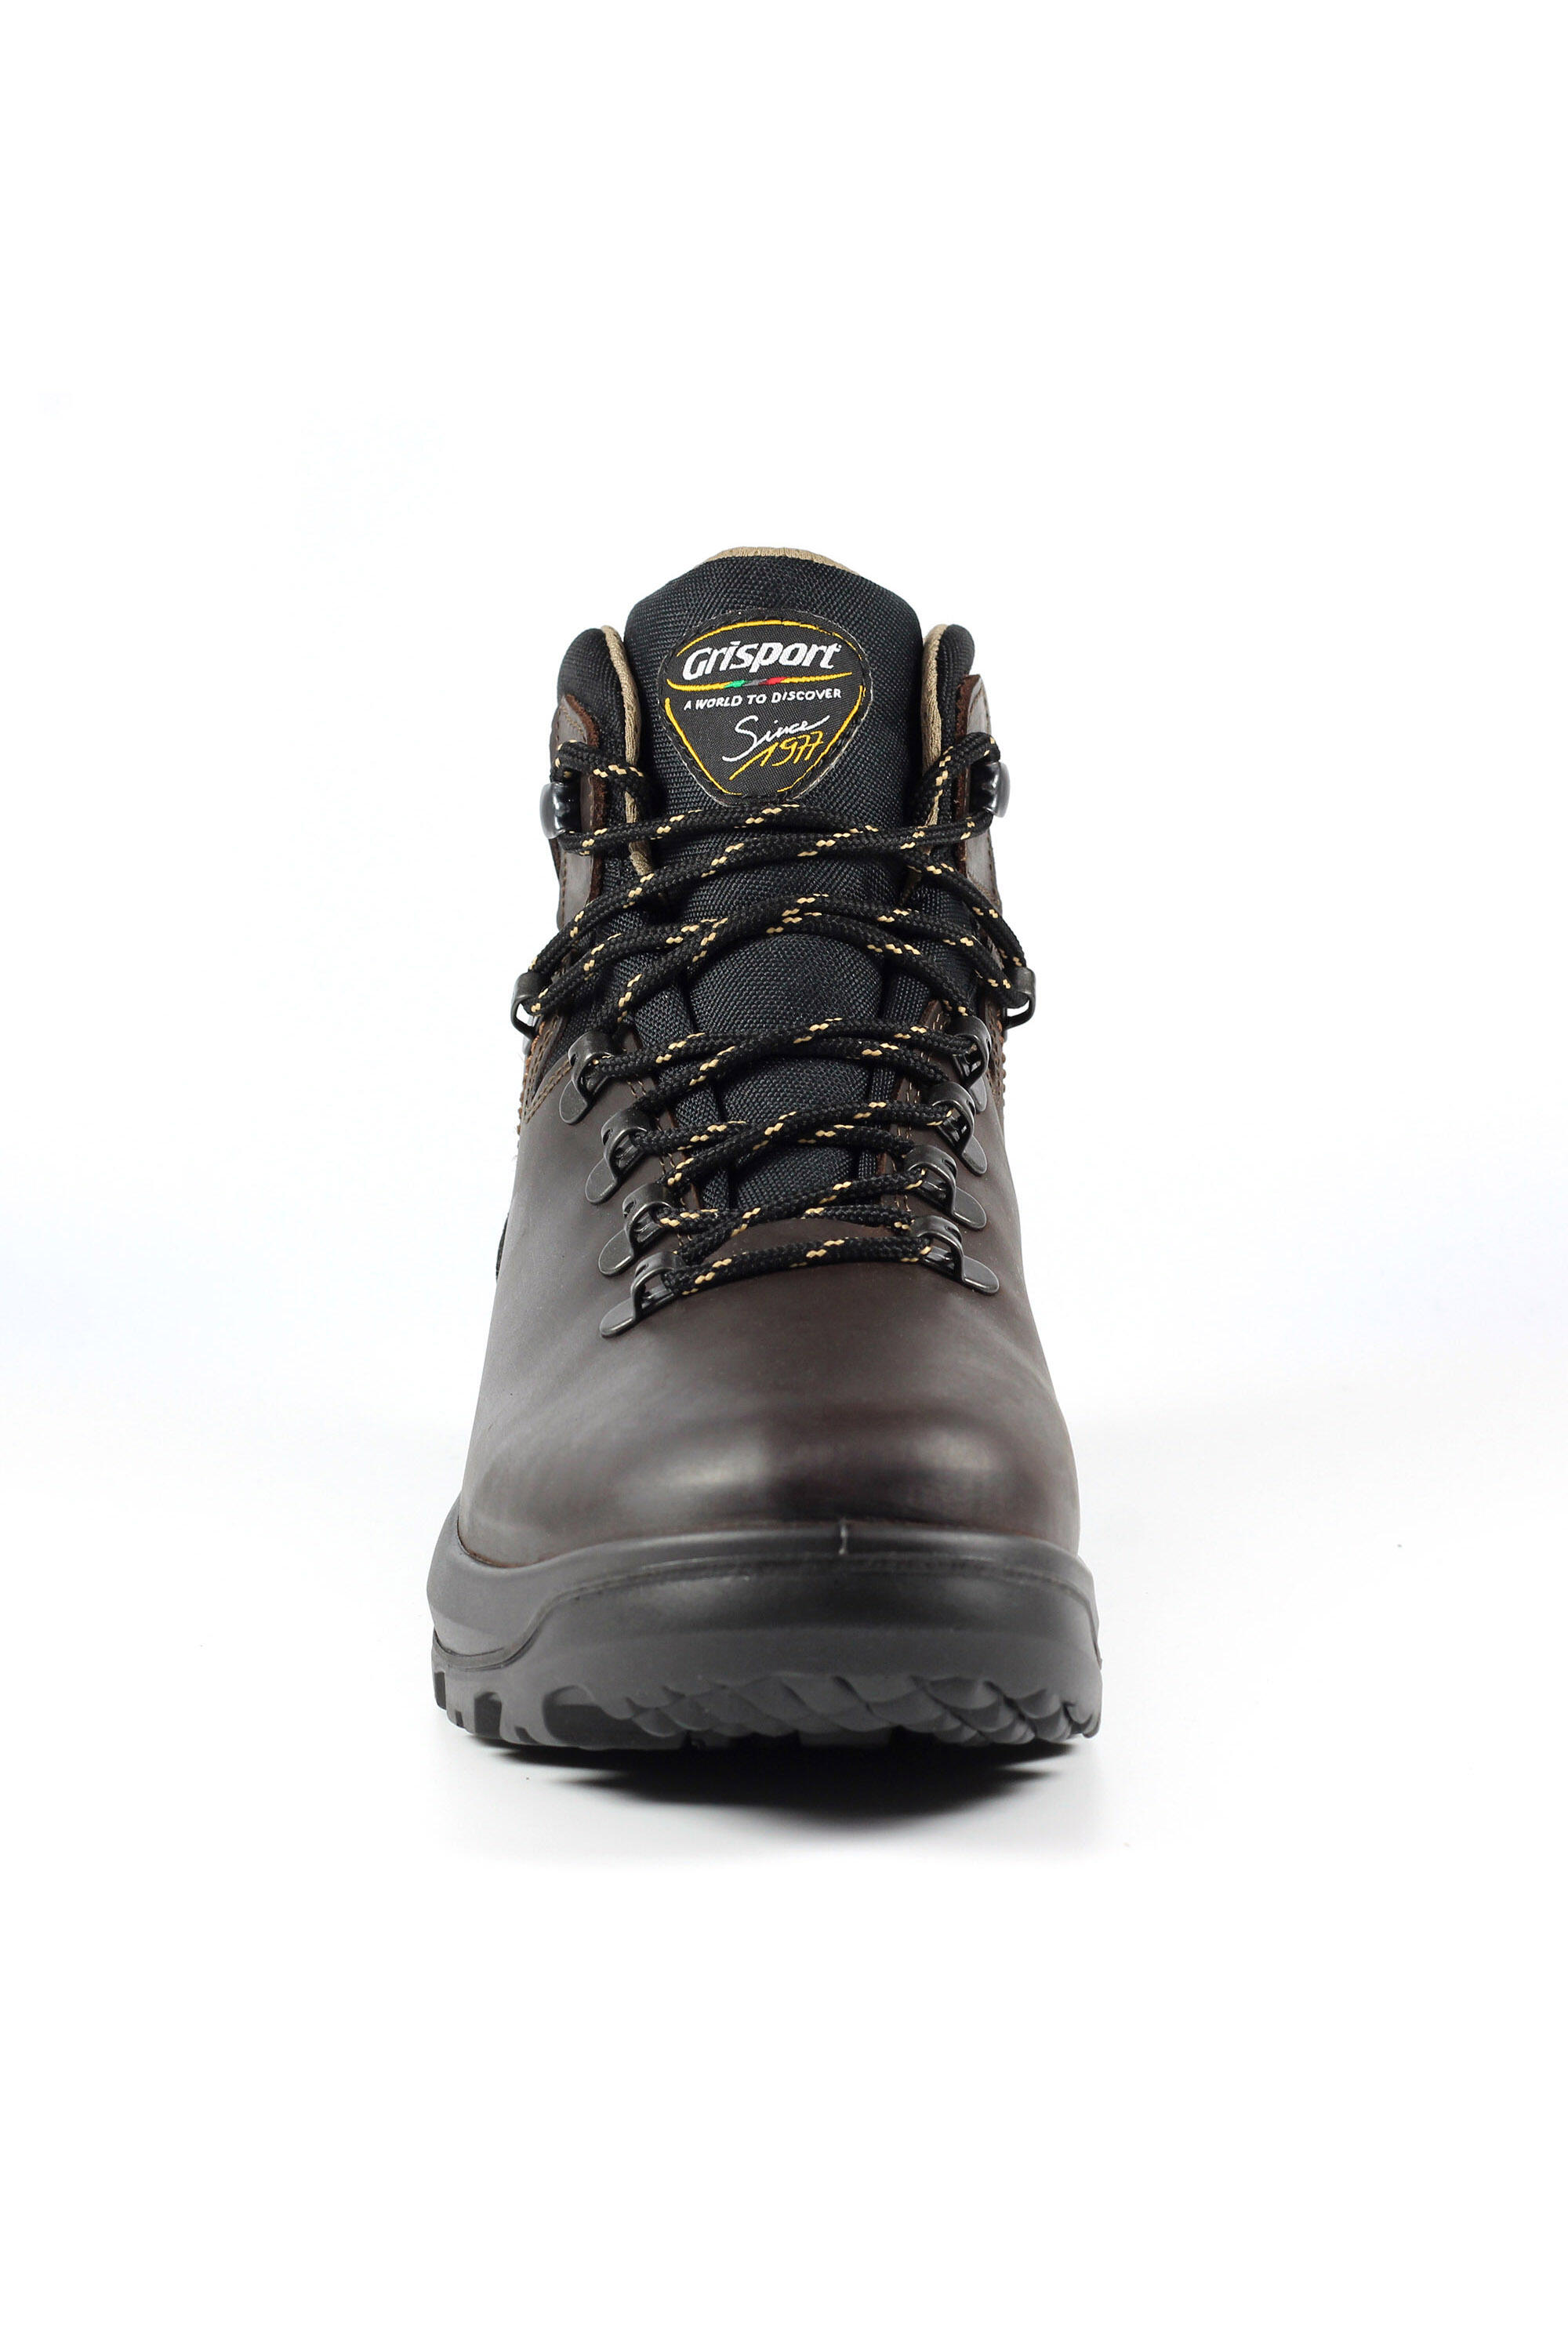 Pennine Brown Waterproof Walking Boot 4/5